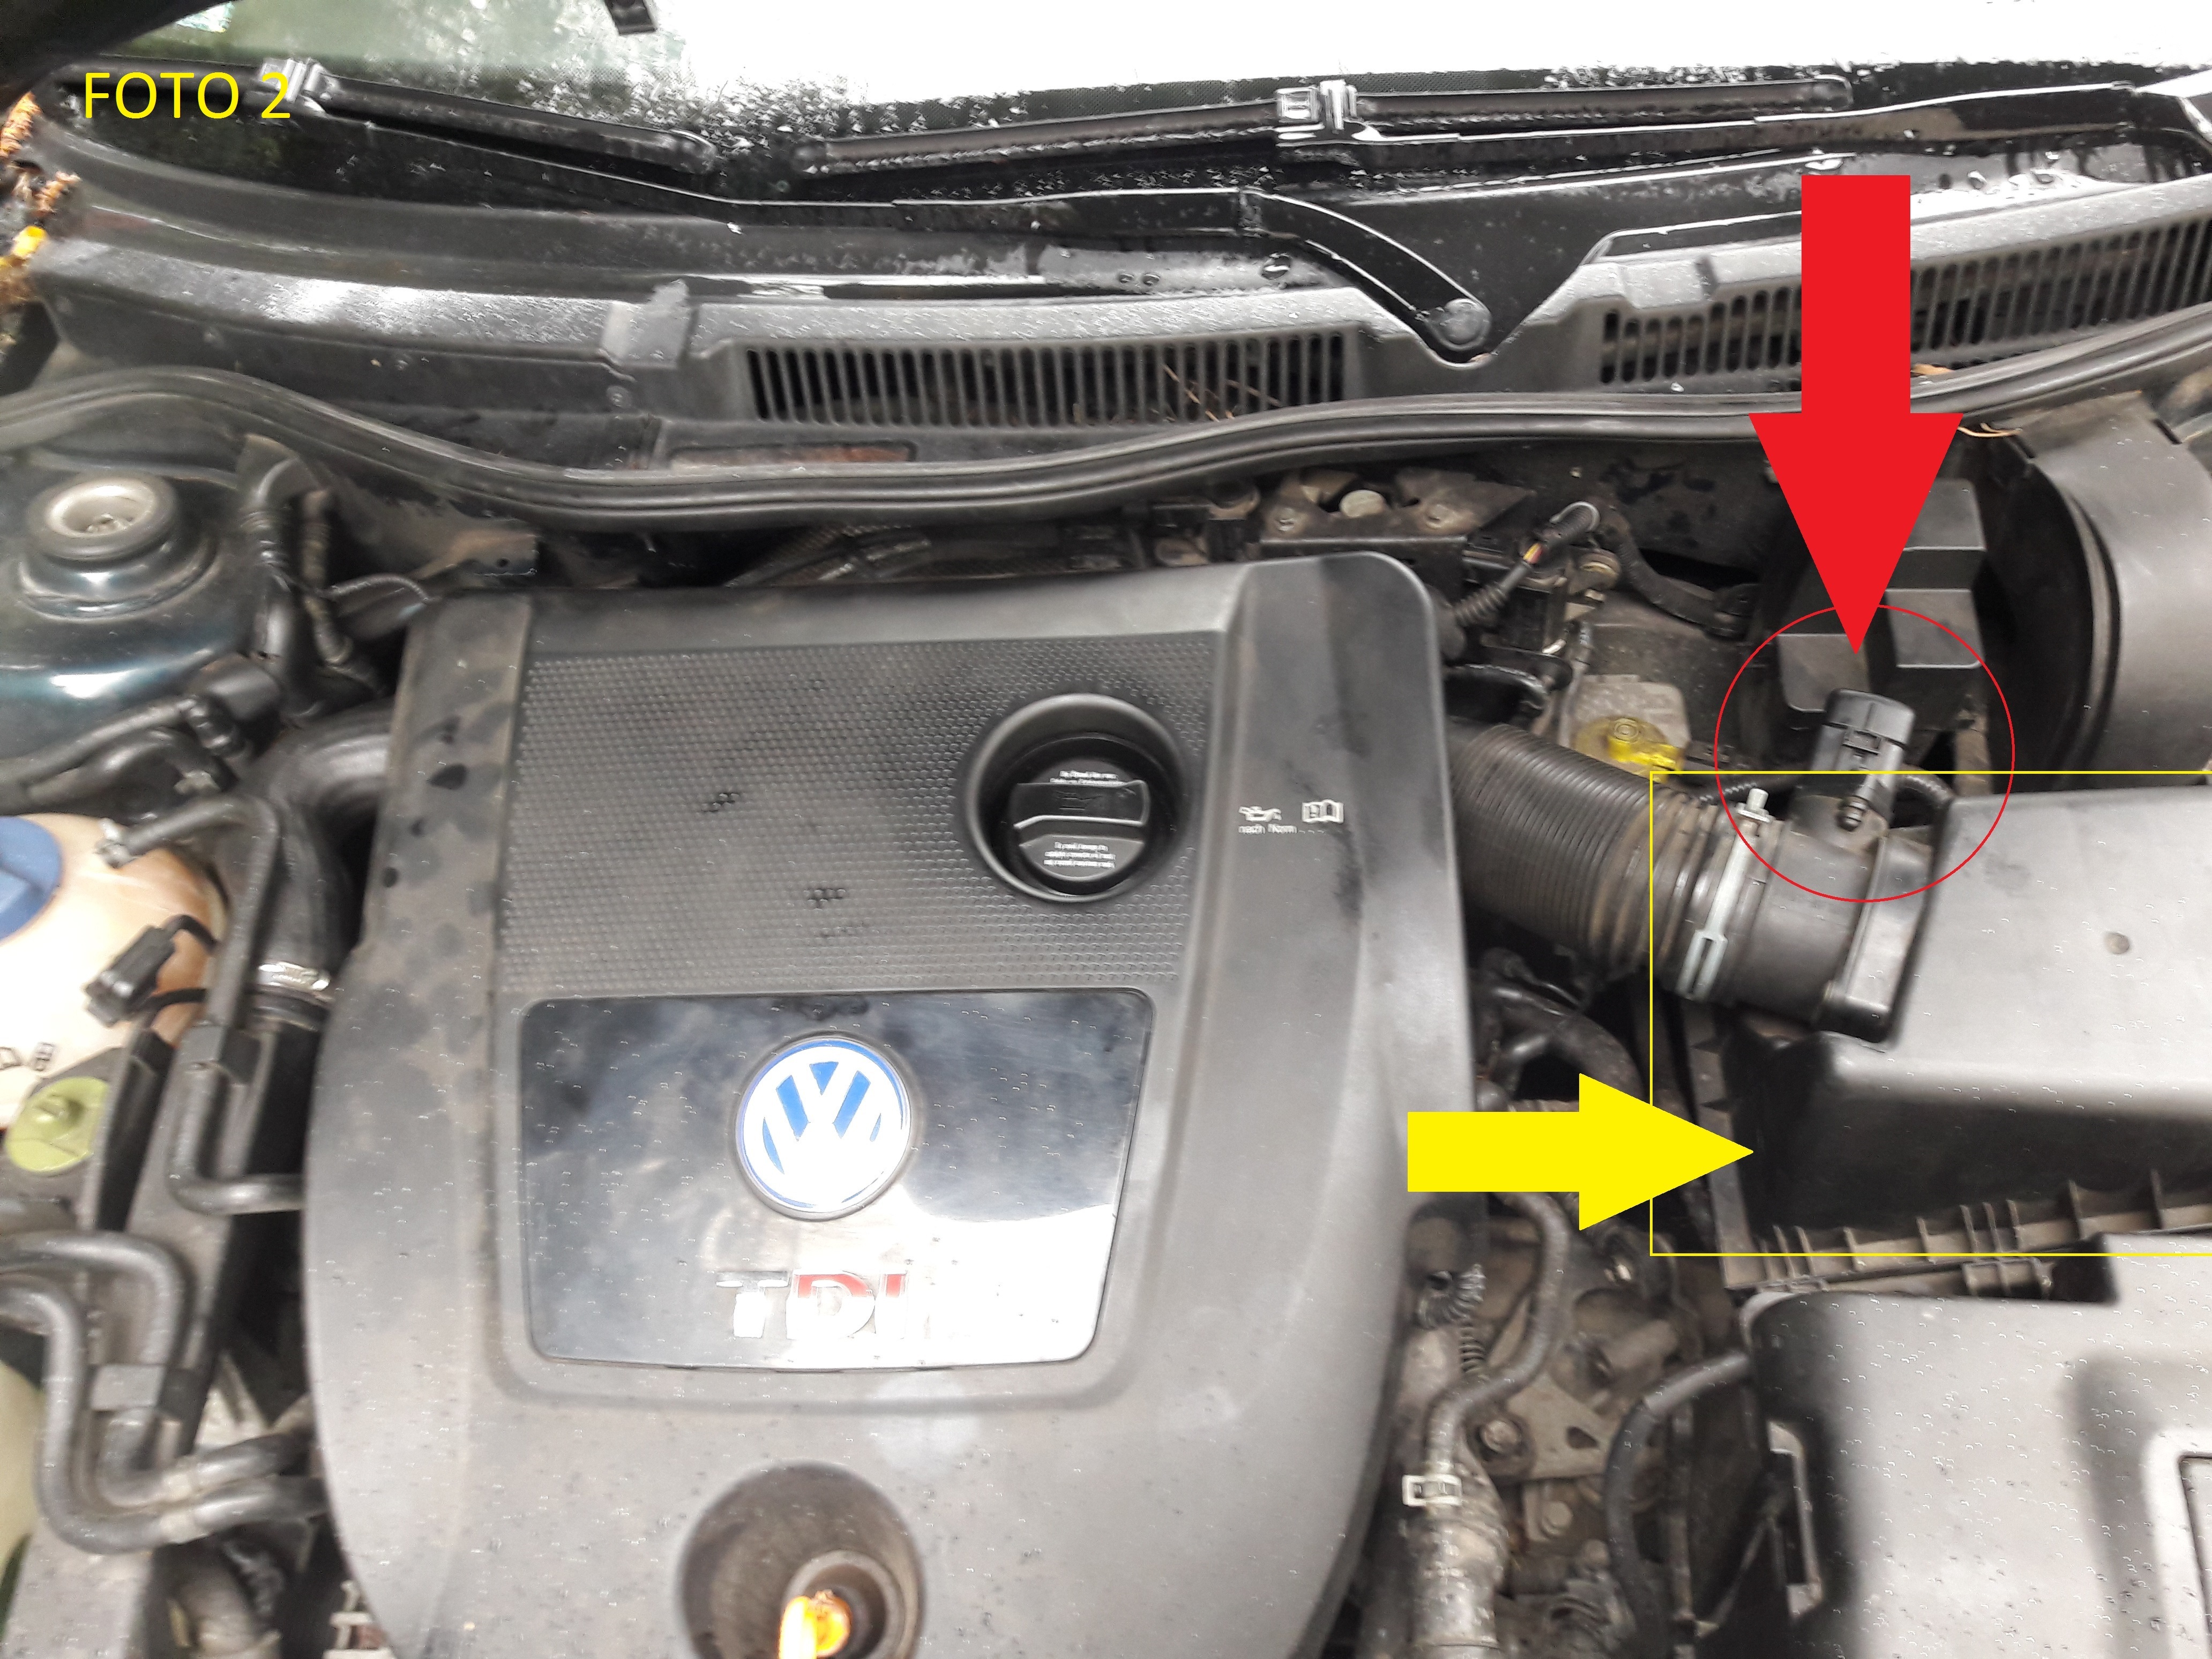 VW Golf 4 1.9tdi 130km Całkowity brak mocy! elektroda.pl